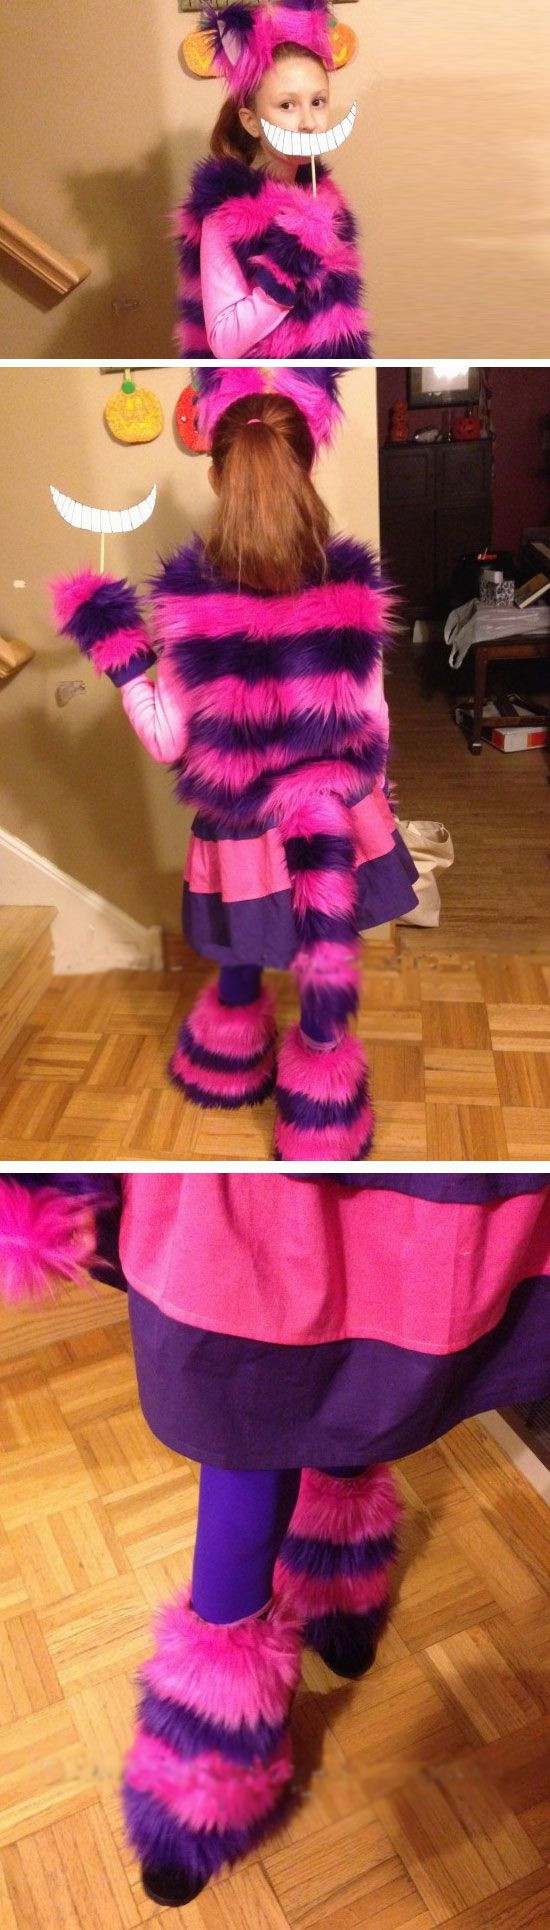 DIY Cheshire Cat Costume
 Cheshire Cat